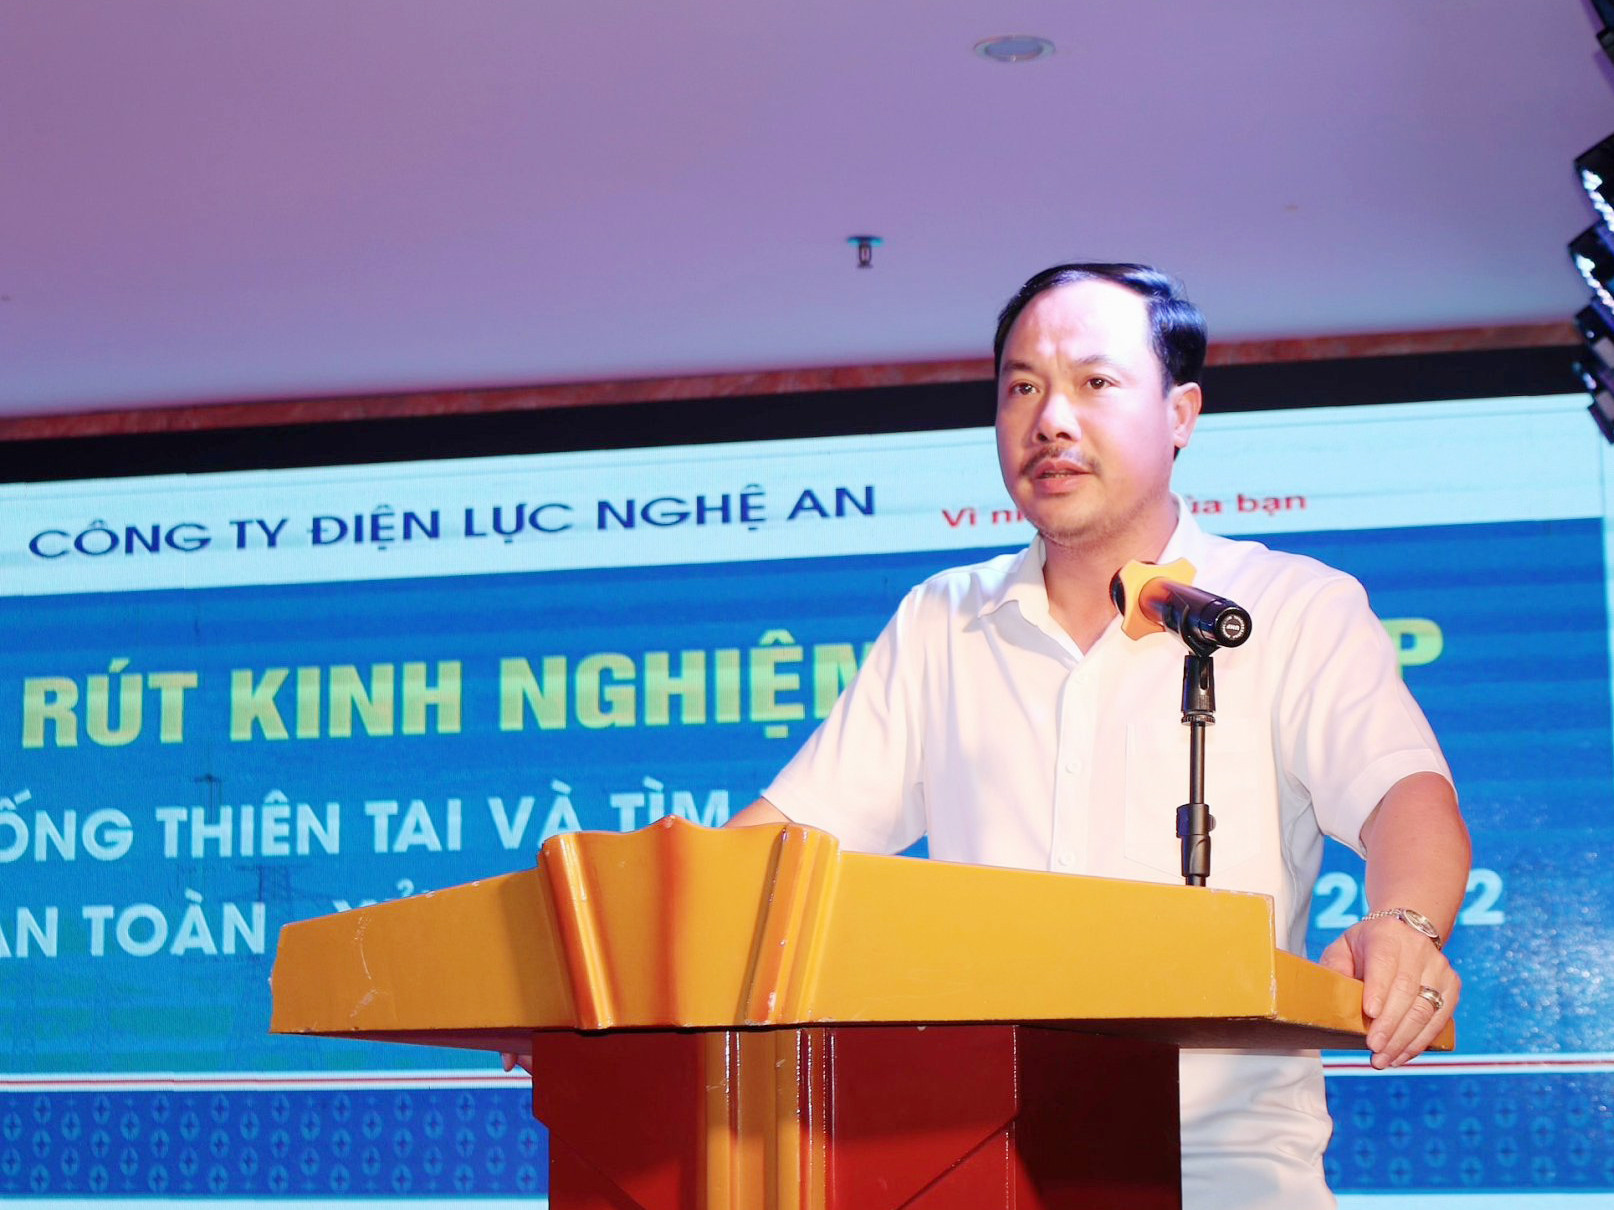 Ông Lê Quang Thanh - Phó giám đốc Công ty Điện lực Nghệ An, đánh giá cuộc diễn tập và rút kinh nghiệm nhằm có hướng xử lý các tình huống phát sinh trong thực tế một cách kịp thời, linh hoạt